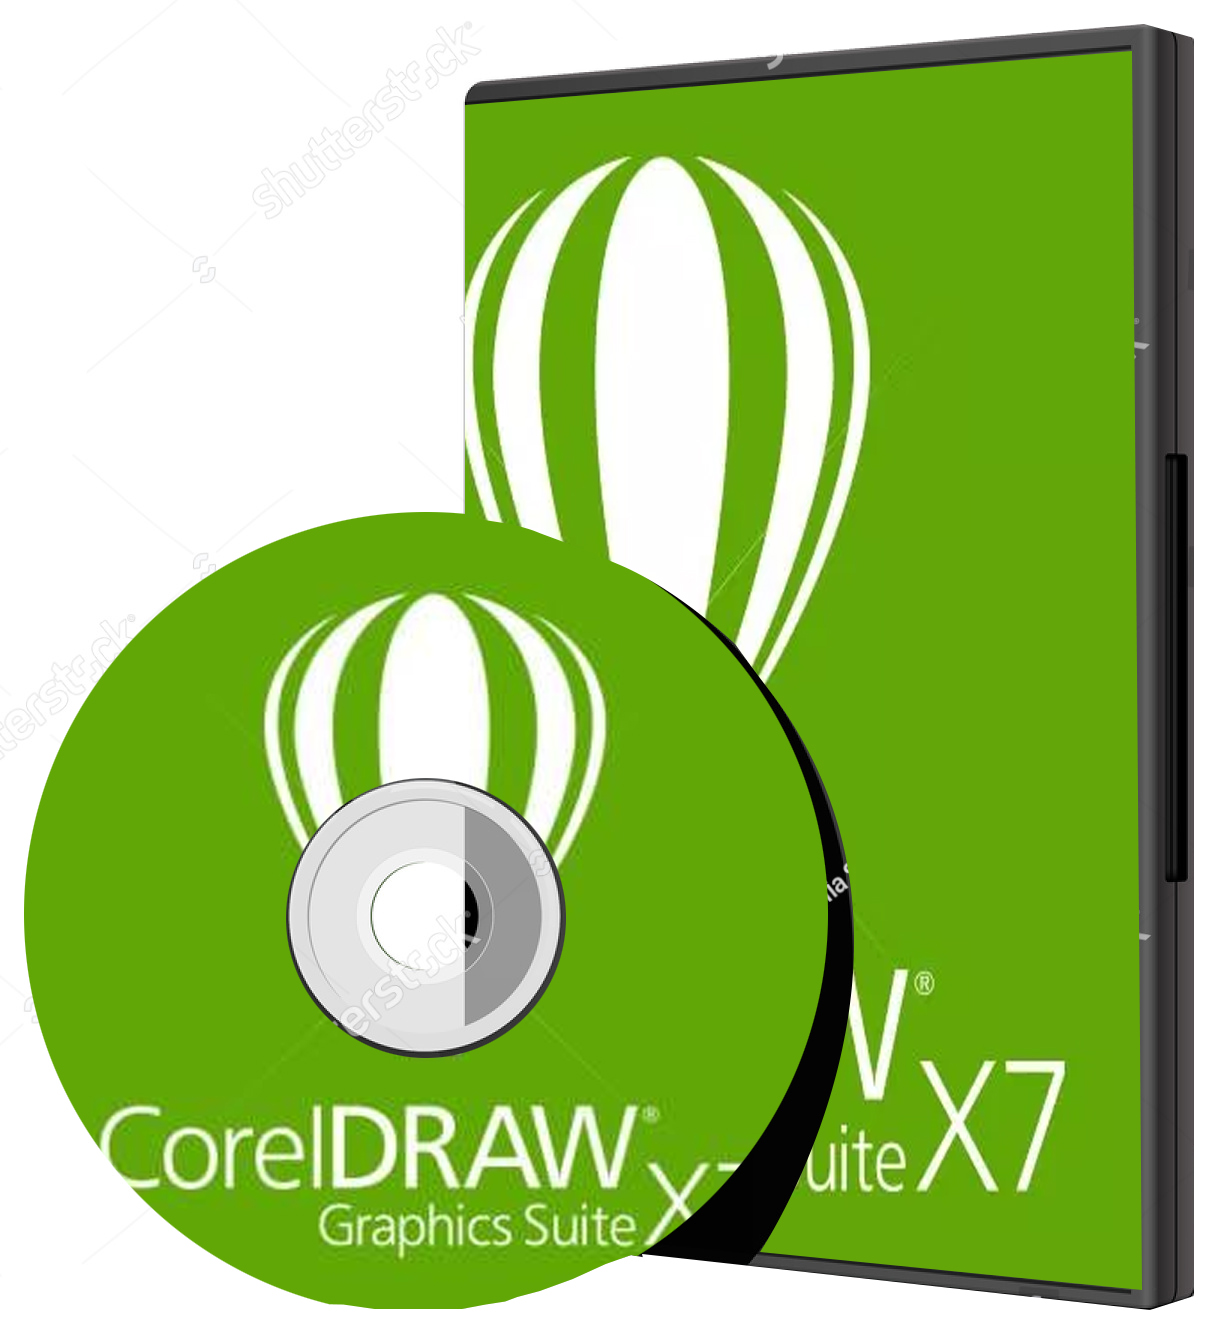 coreldraw x7 64 bit free download full version